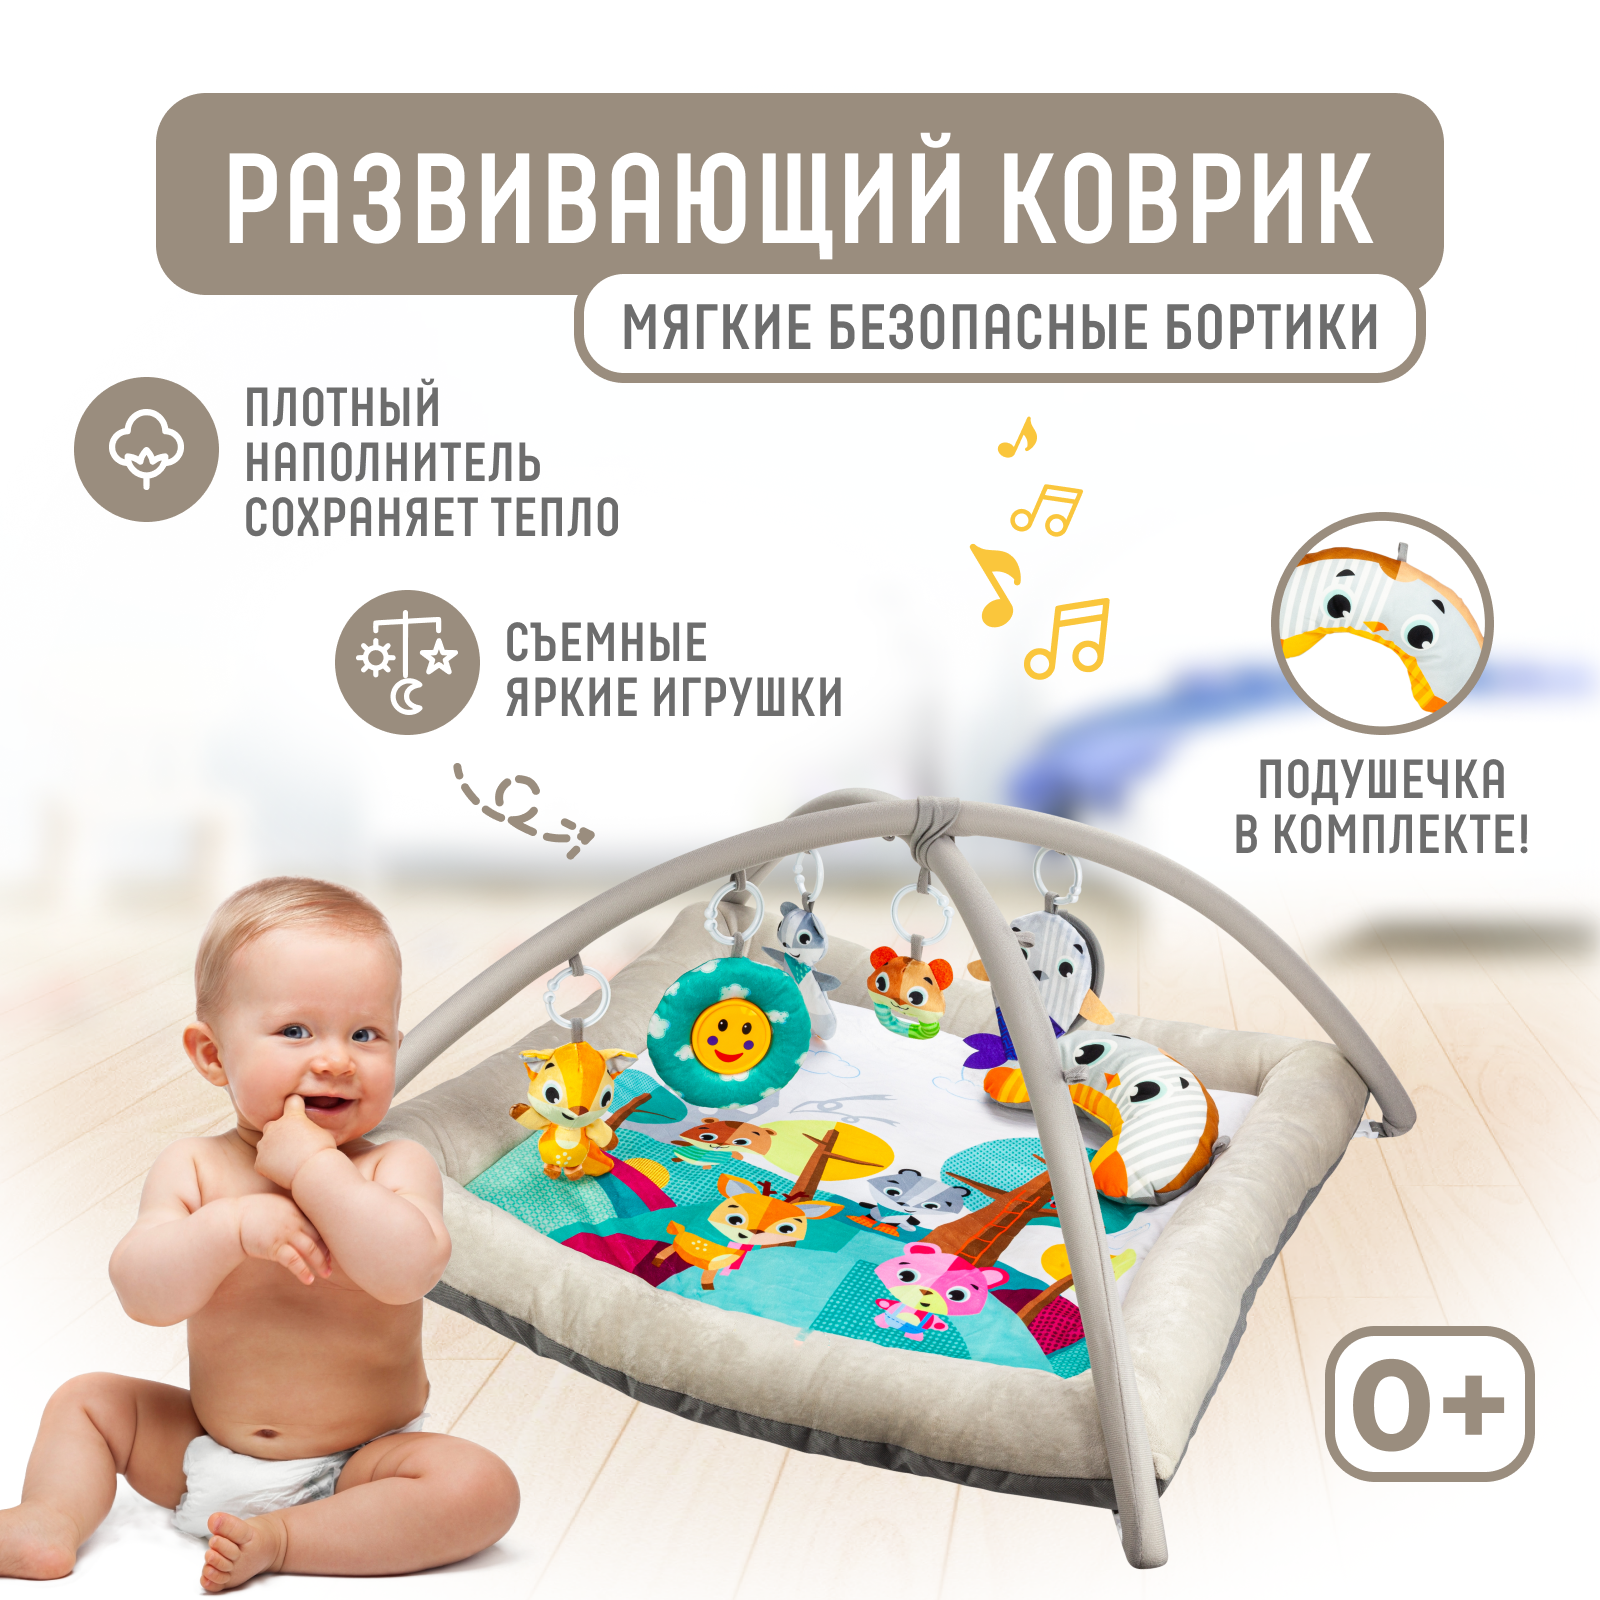 Развивающий игровой коврик Solmax для новорожденных с дугой и игрушками, бежевый/голубой игровой коврик chicco музыкальный классики